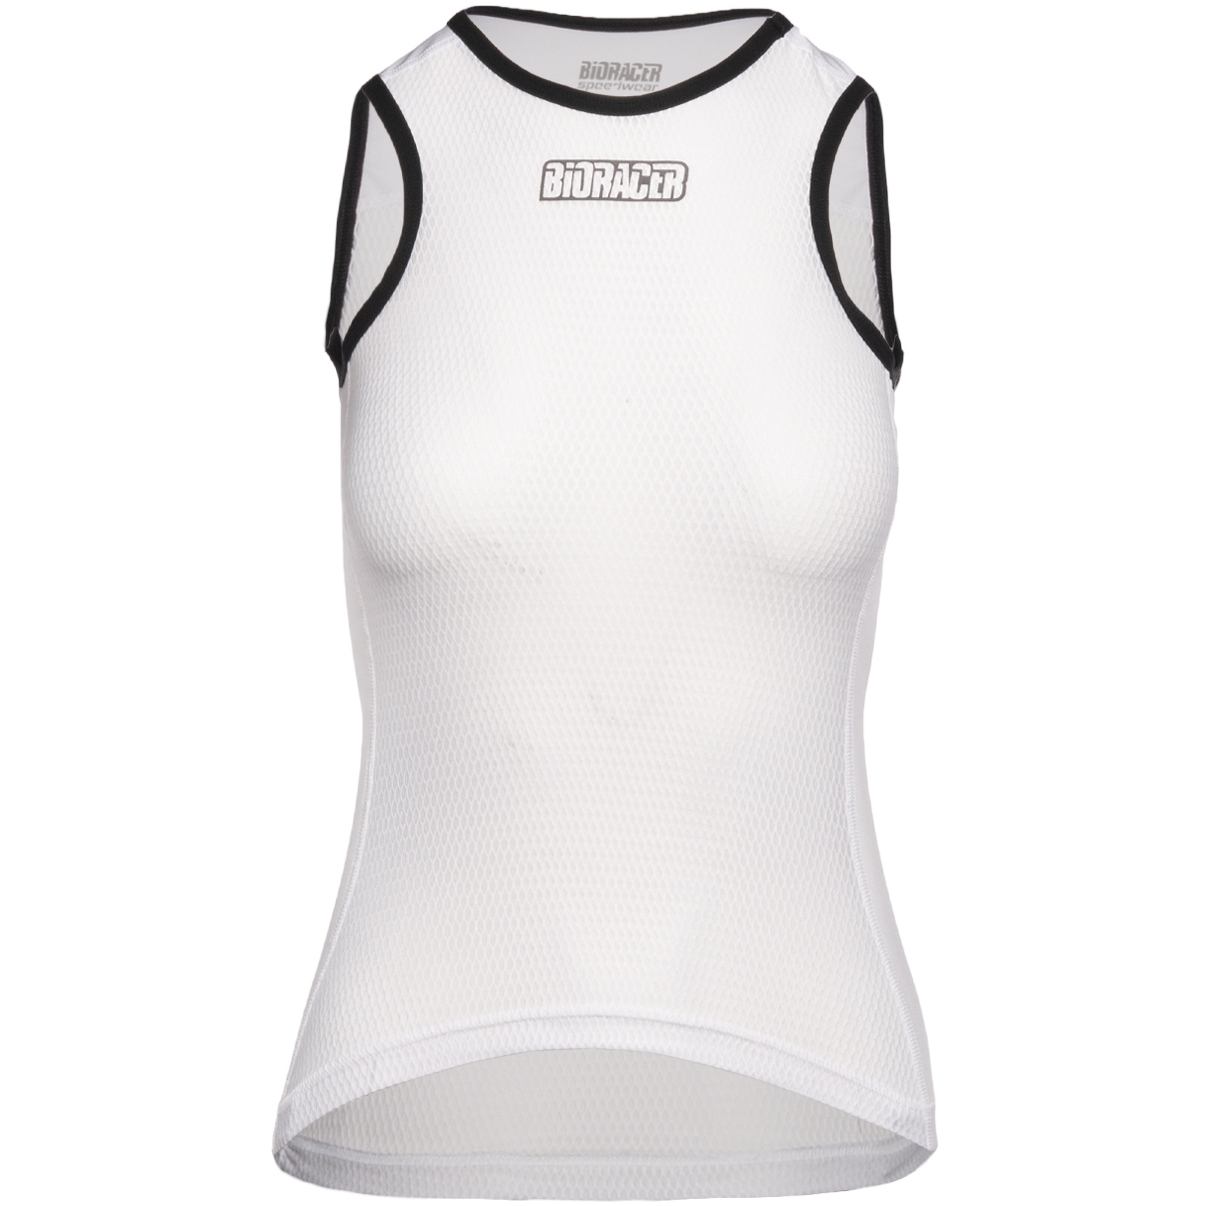 Produktbild von Bioracer Breeze Ärmelloses Damen Unterhemd - weiss